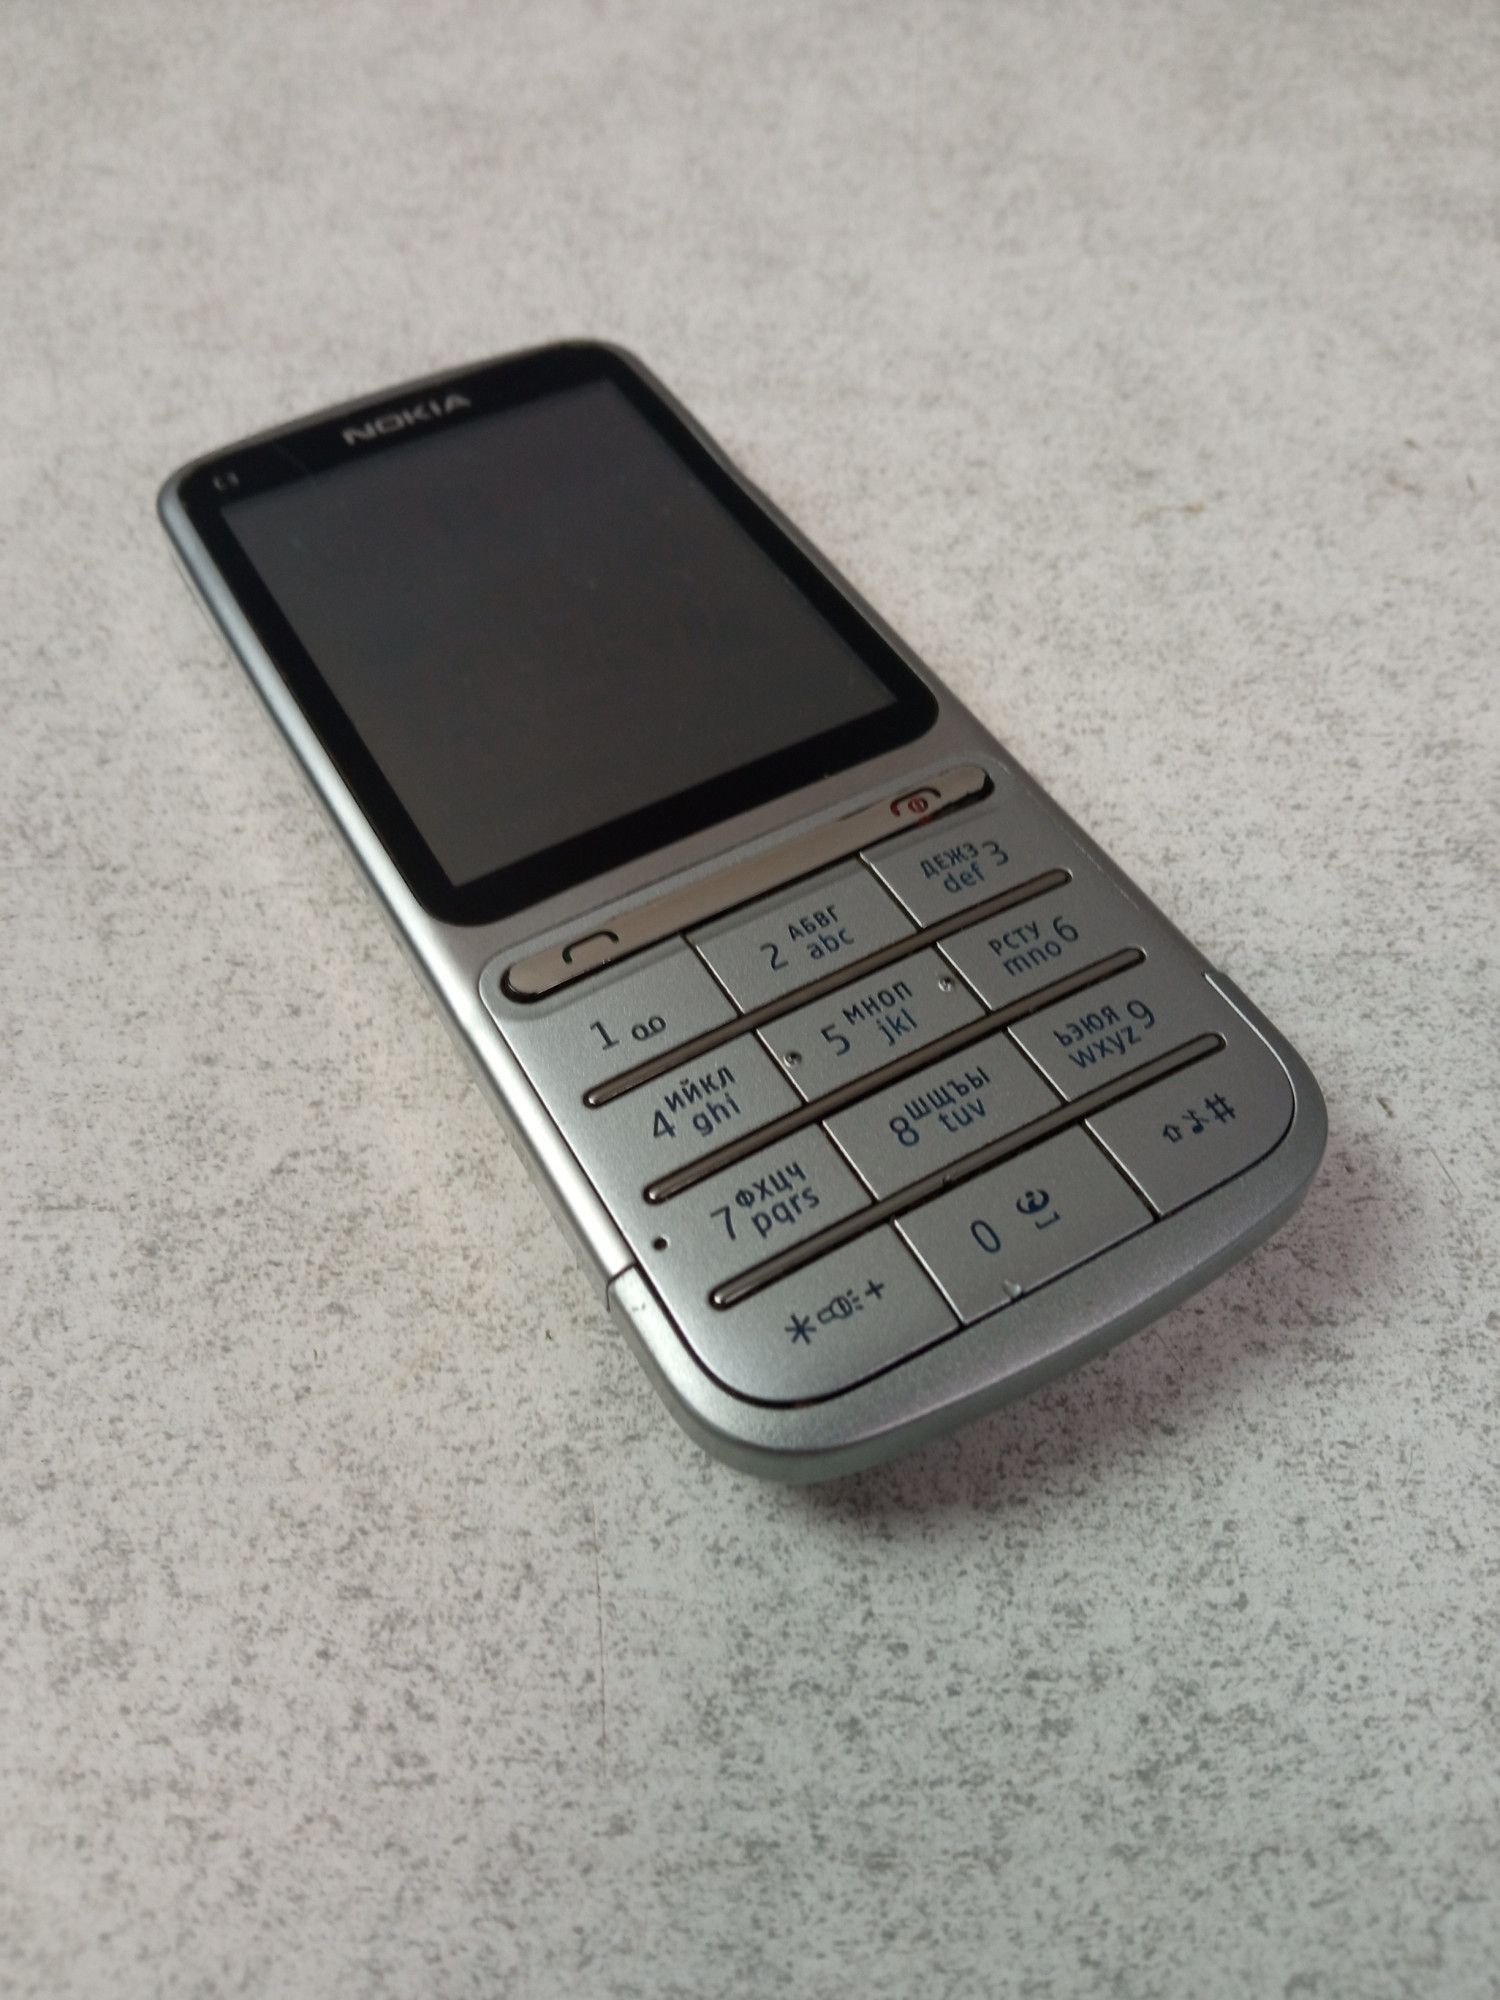 Nokia C3-01 7